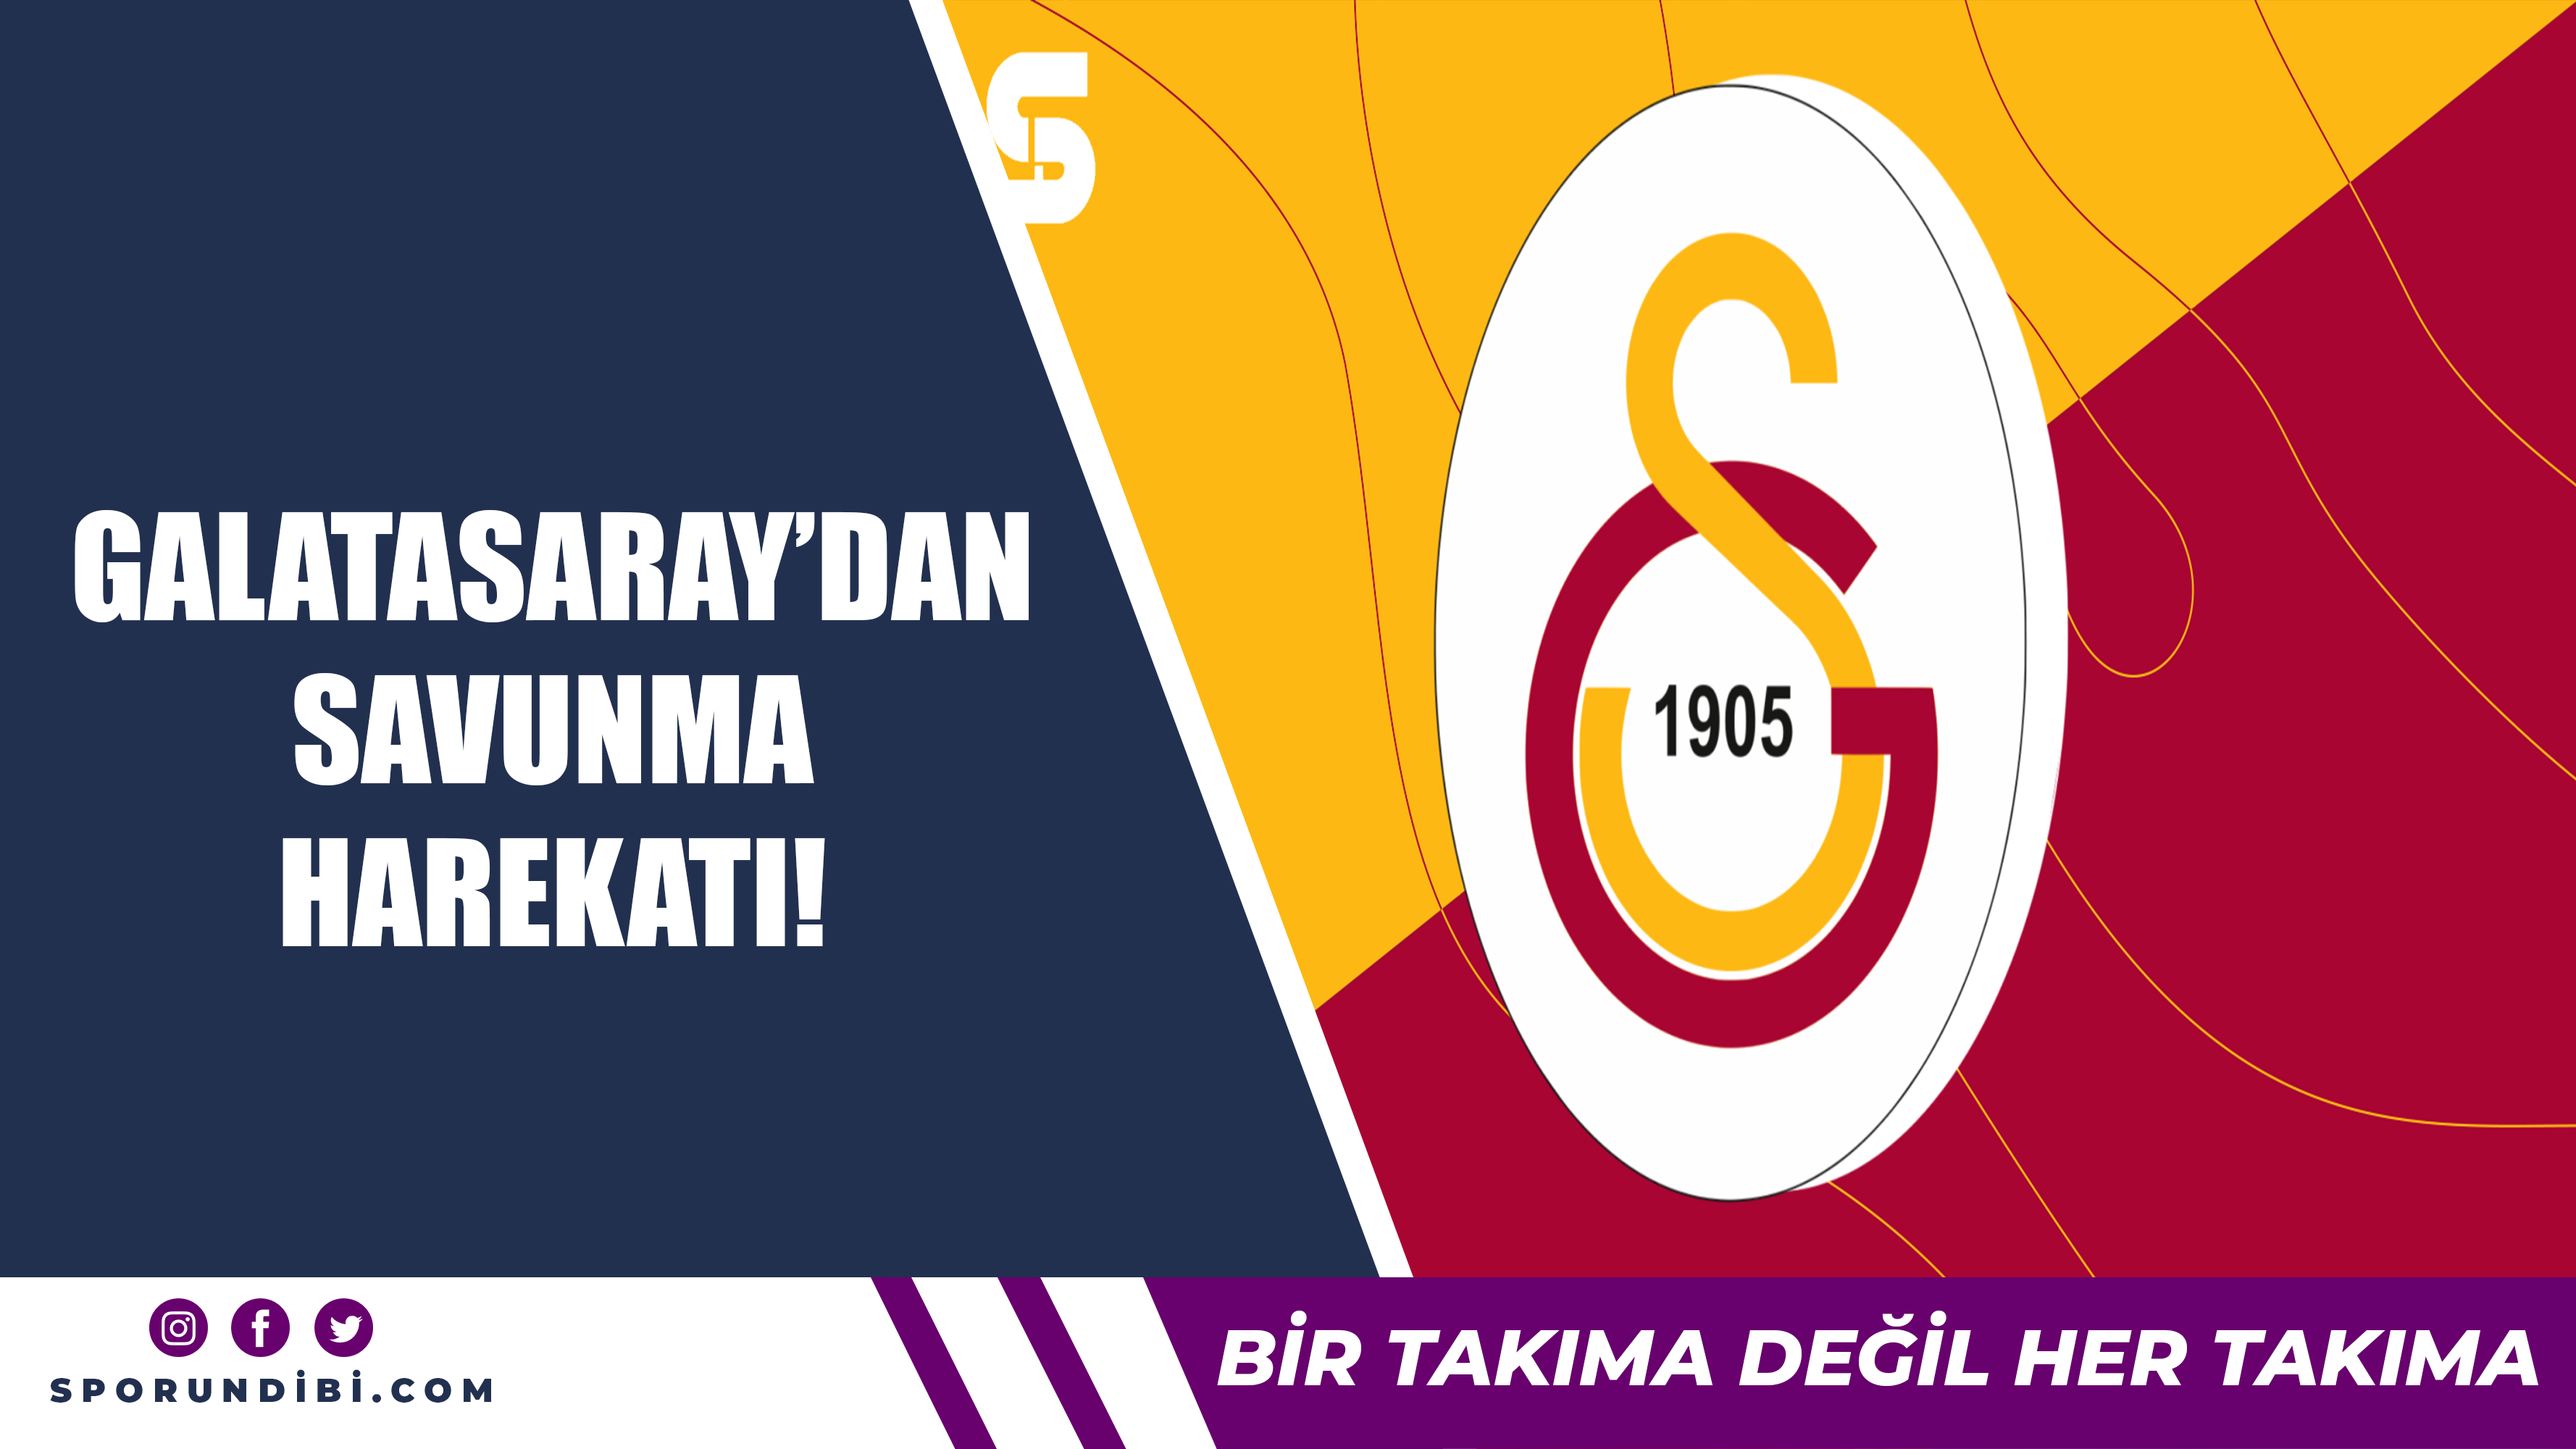 Galatasaray'dan savunma harekatı!